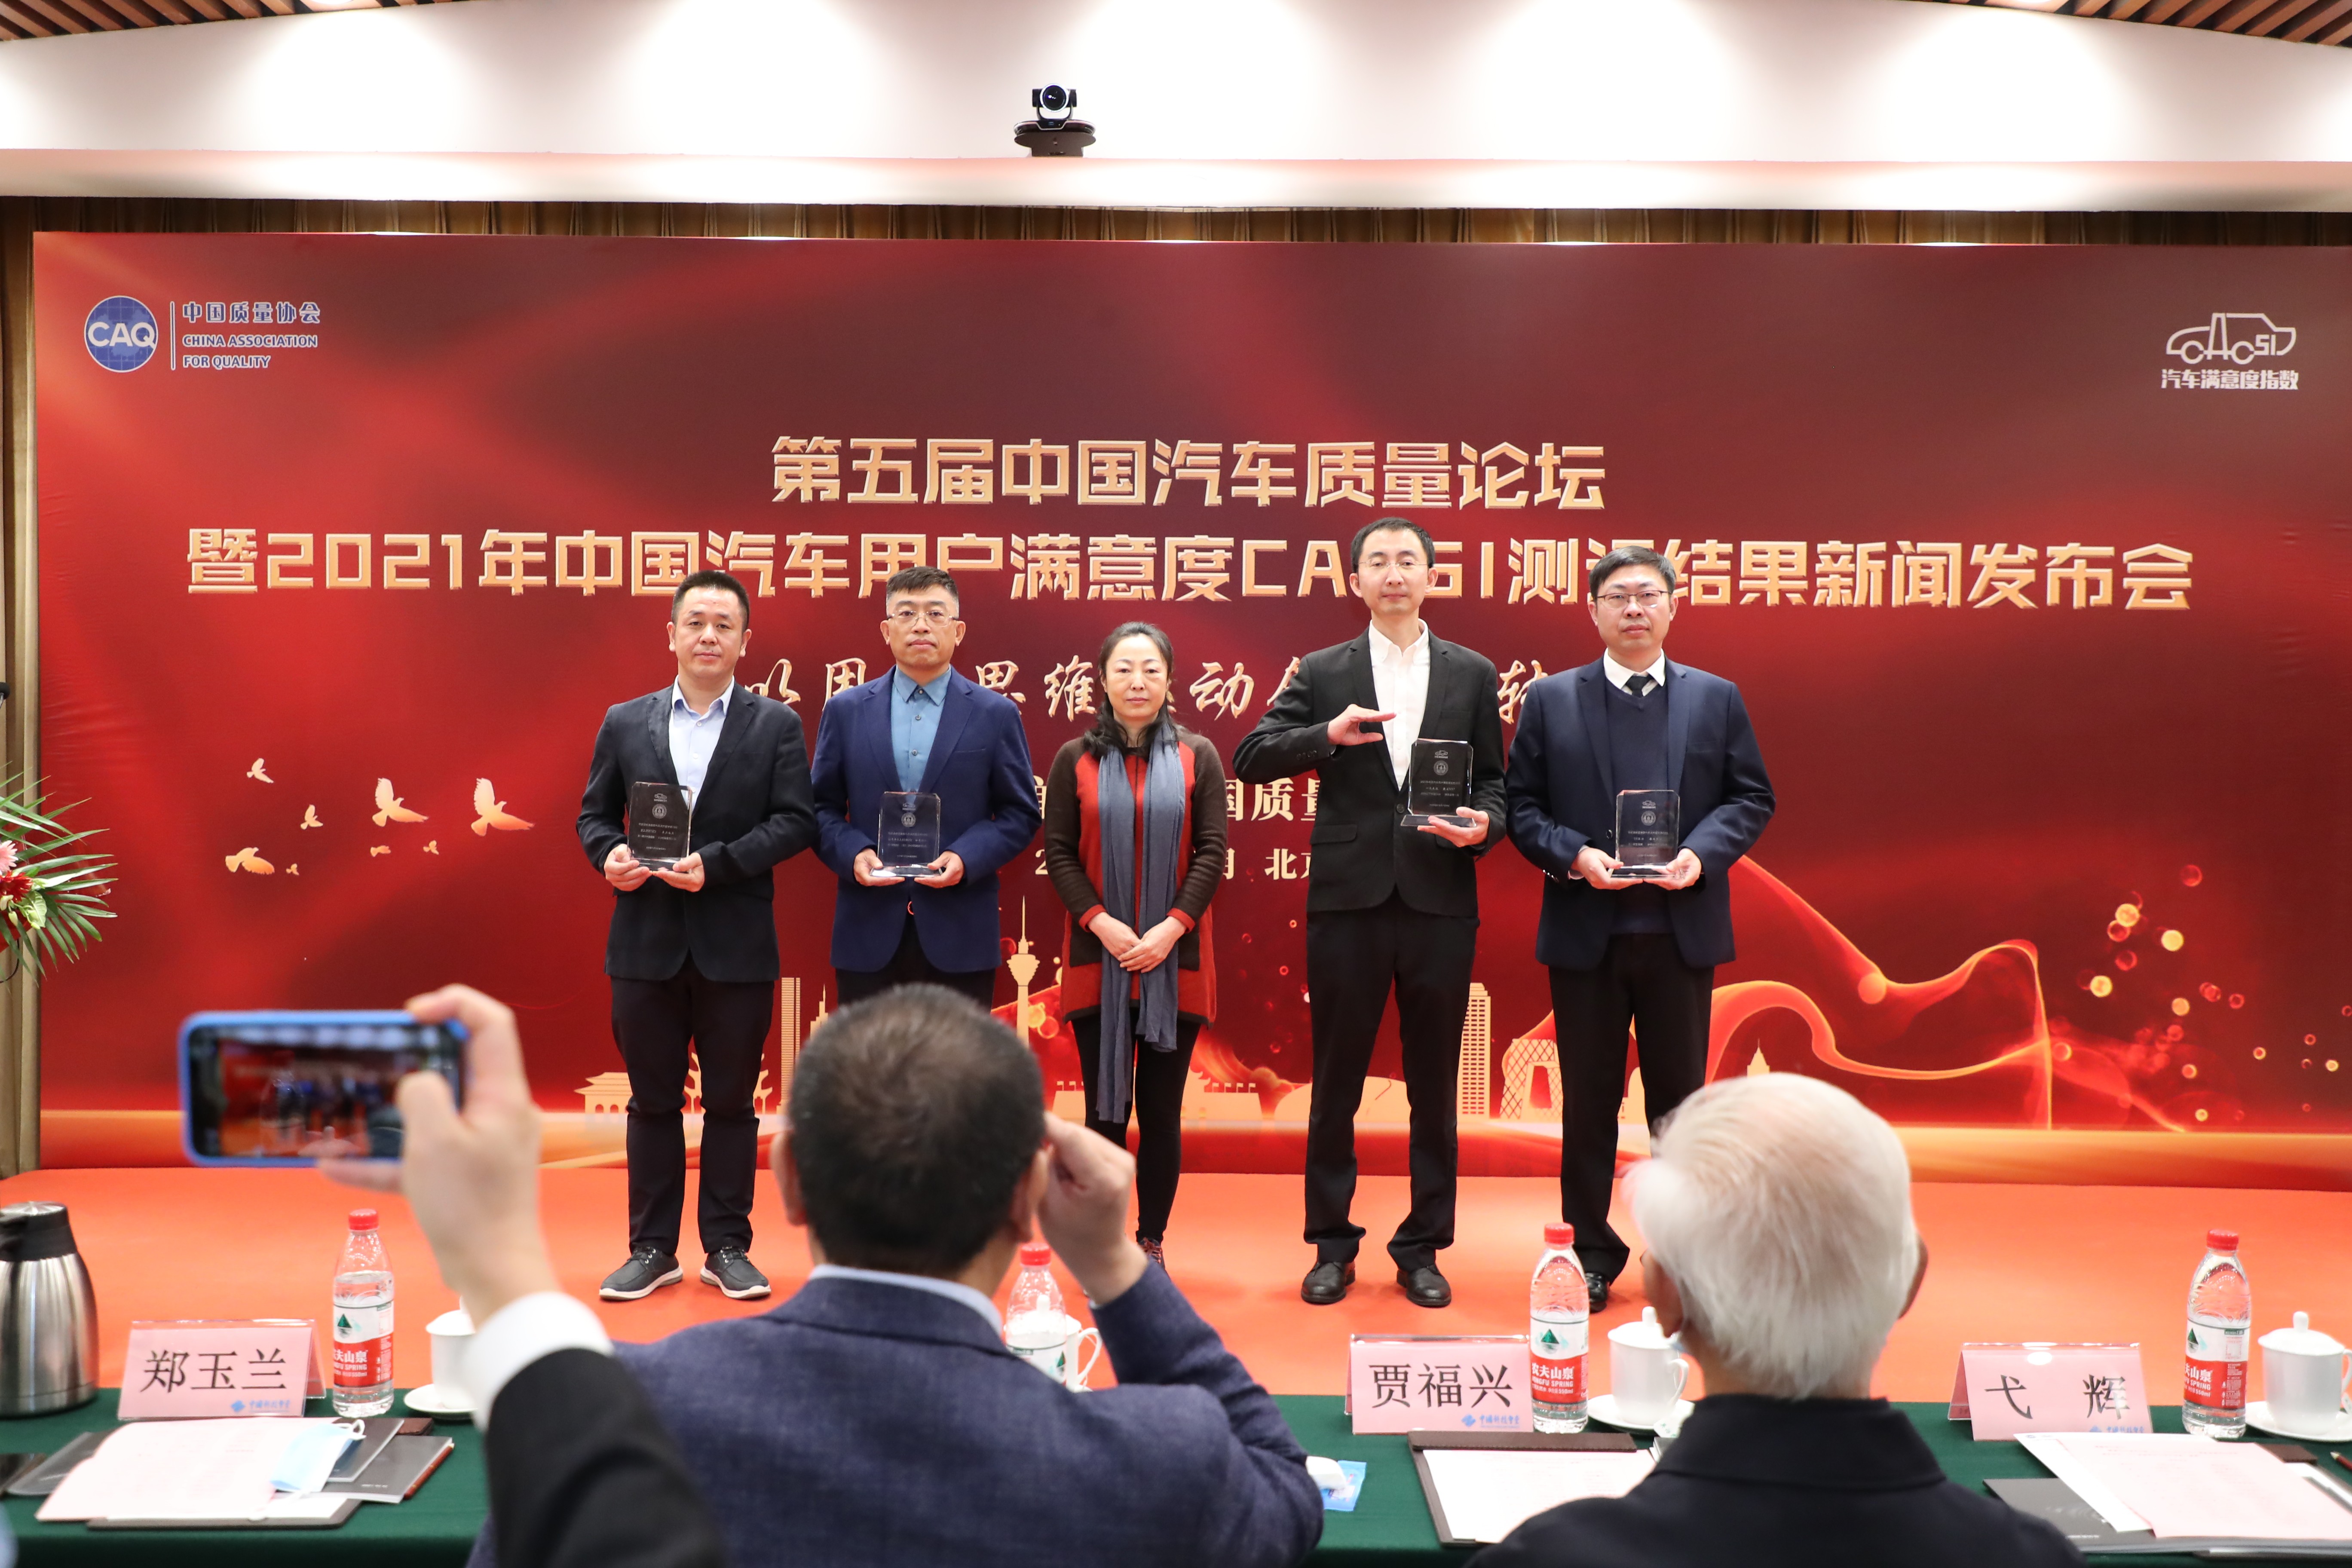 捷达品牌获2021年度中国质量协会用户满意度第一-图1